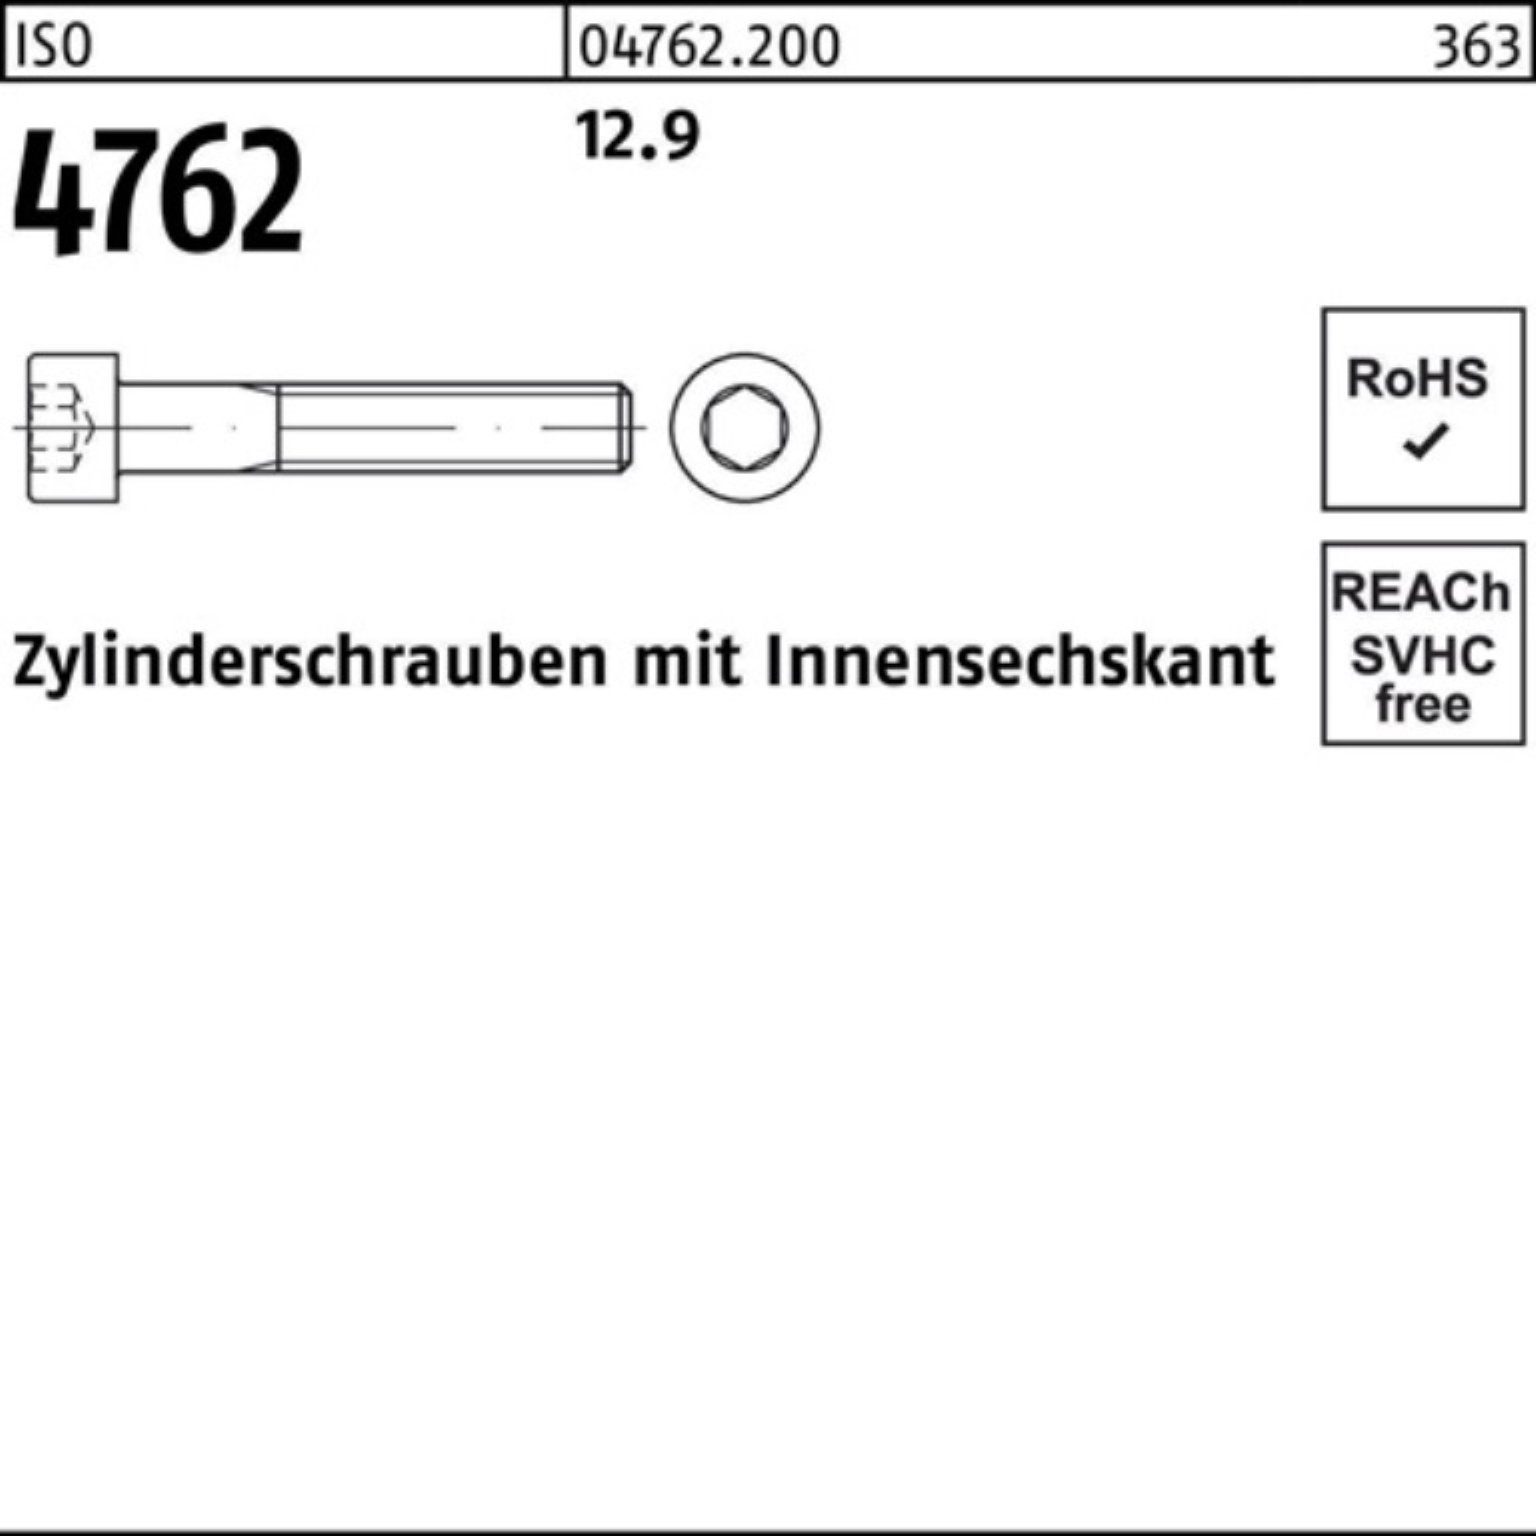 ISO Zylinderschraube 170 4762 Zylinderschraube 12.9 100er Innen-6kt Pack Stück M6x 100 Reyher